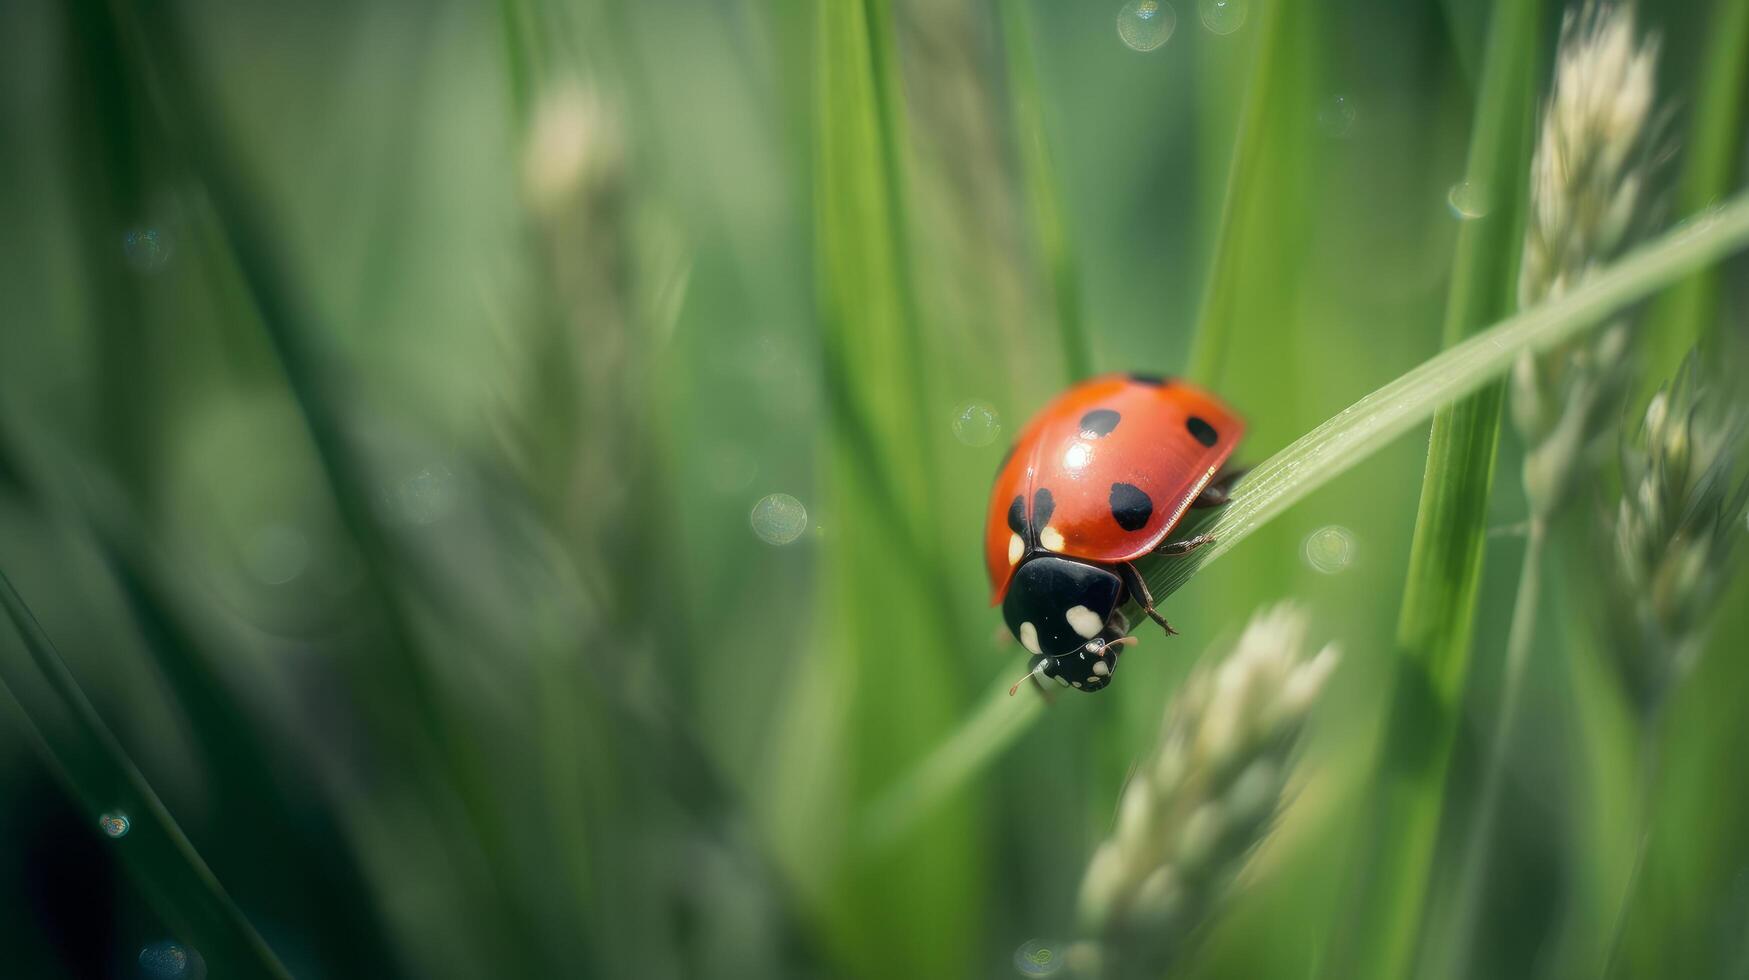 Ladybug on natural background. Illustration photo